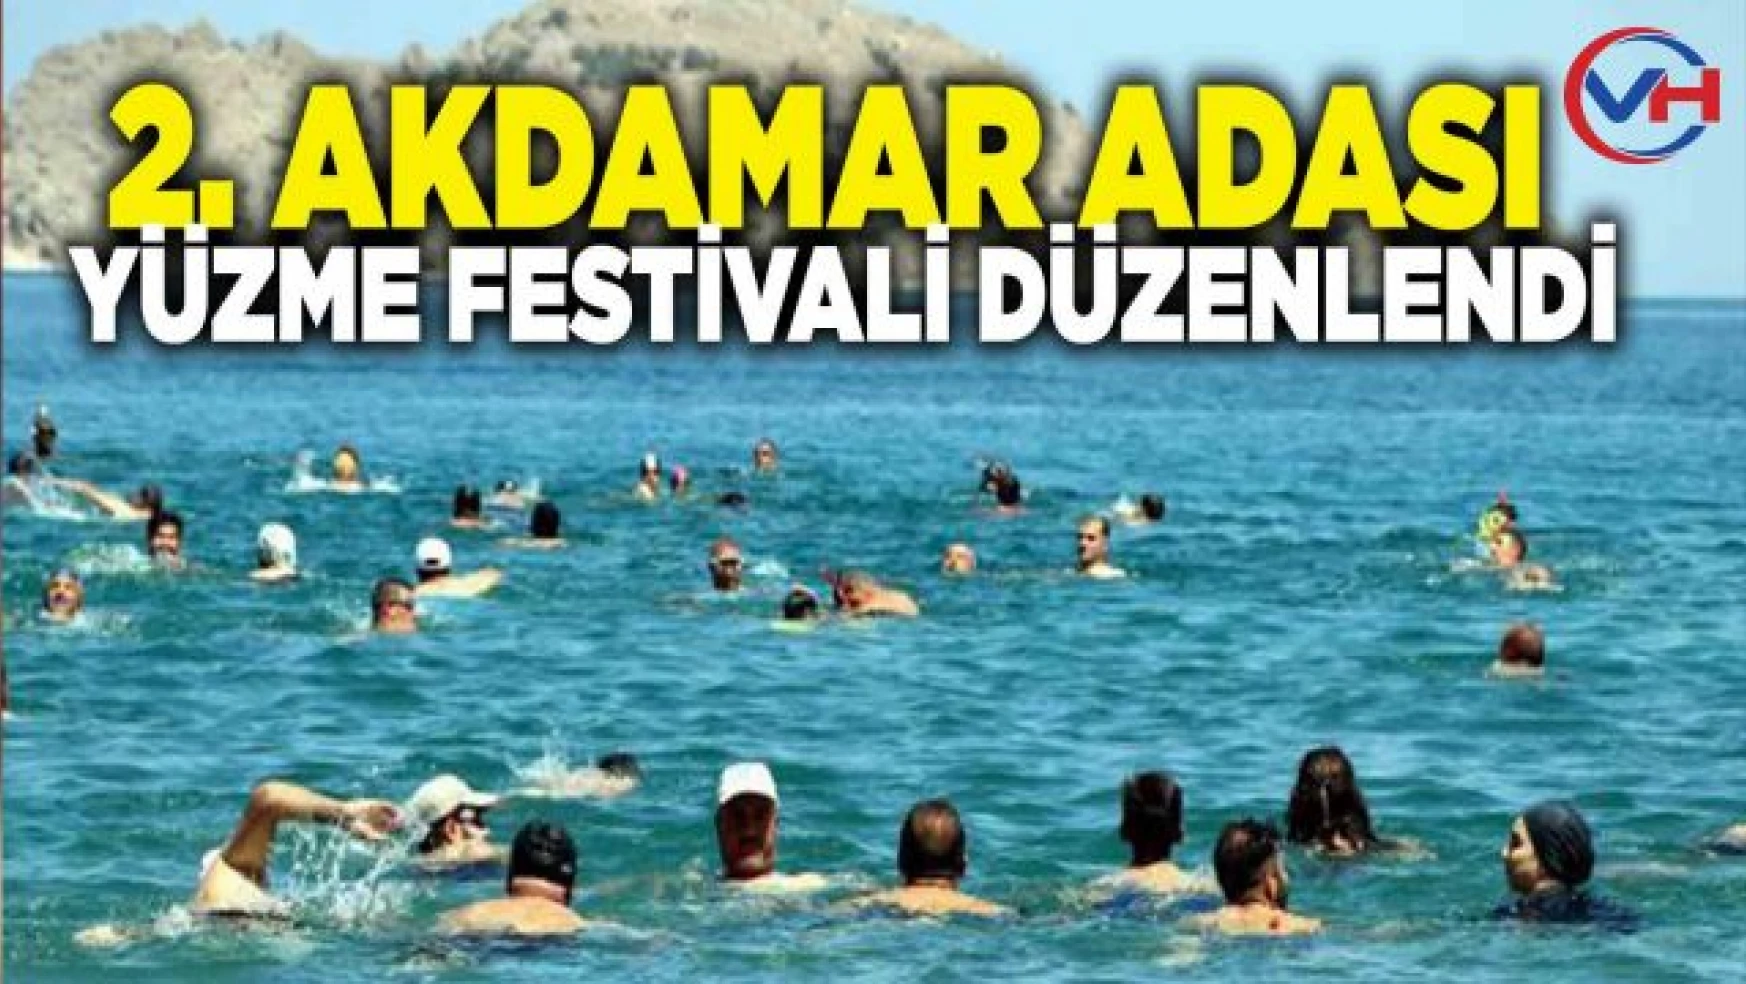 2. Akdamar Adası Yüzme Festivali düzenlendi